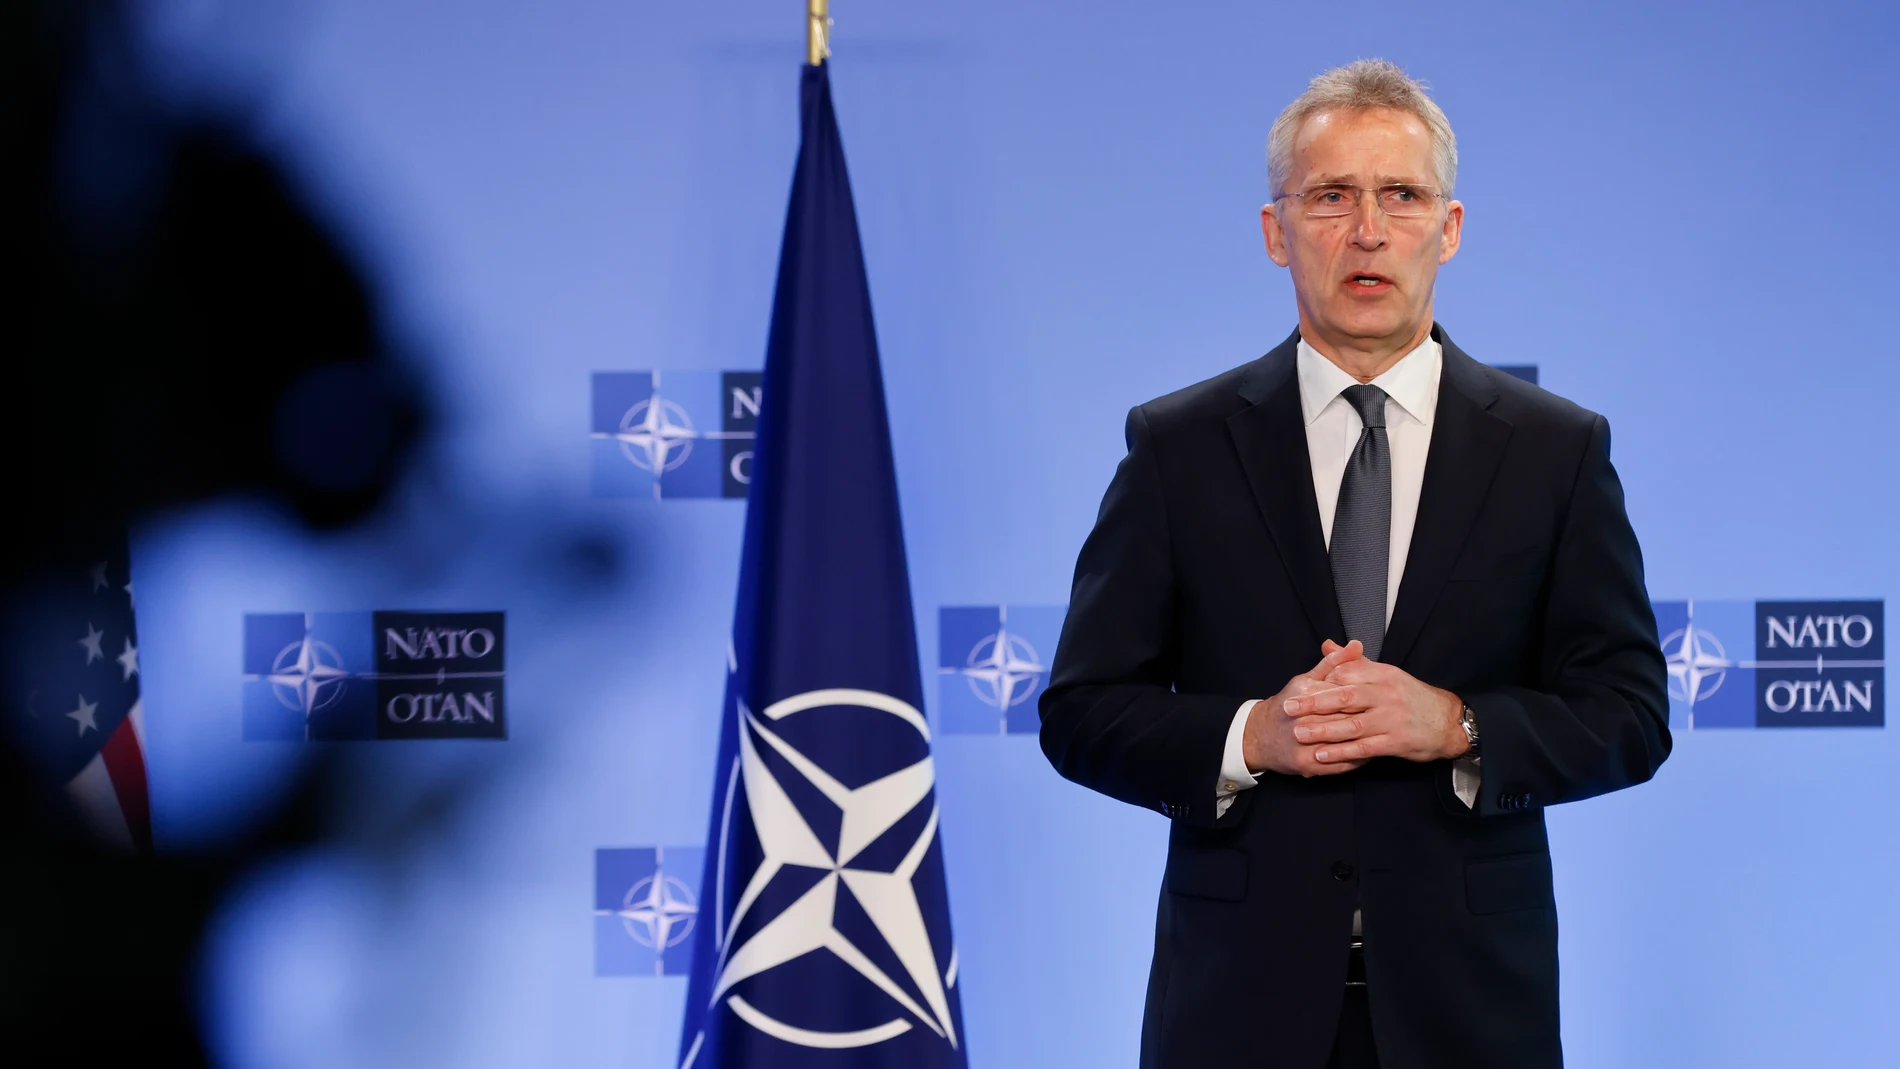 ¿Qué países no pueden entrar en la OTAN según Putin? Esta es la lista negra de Rusia